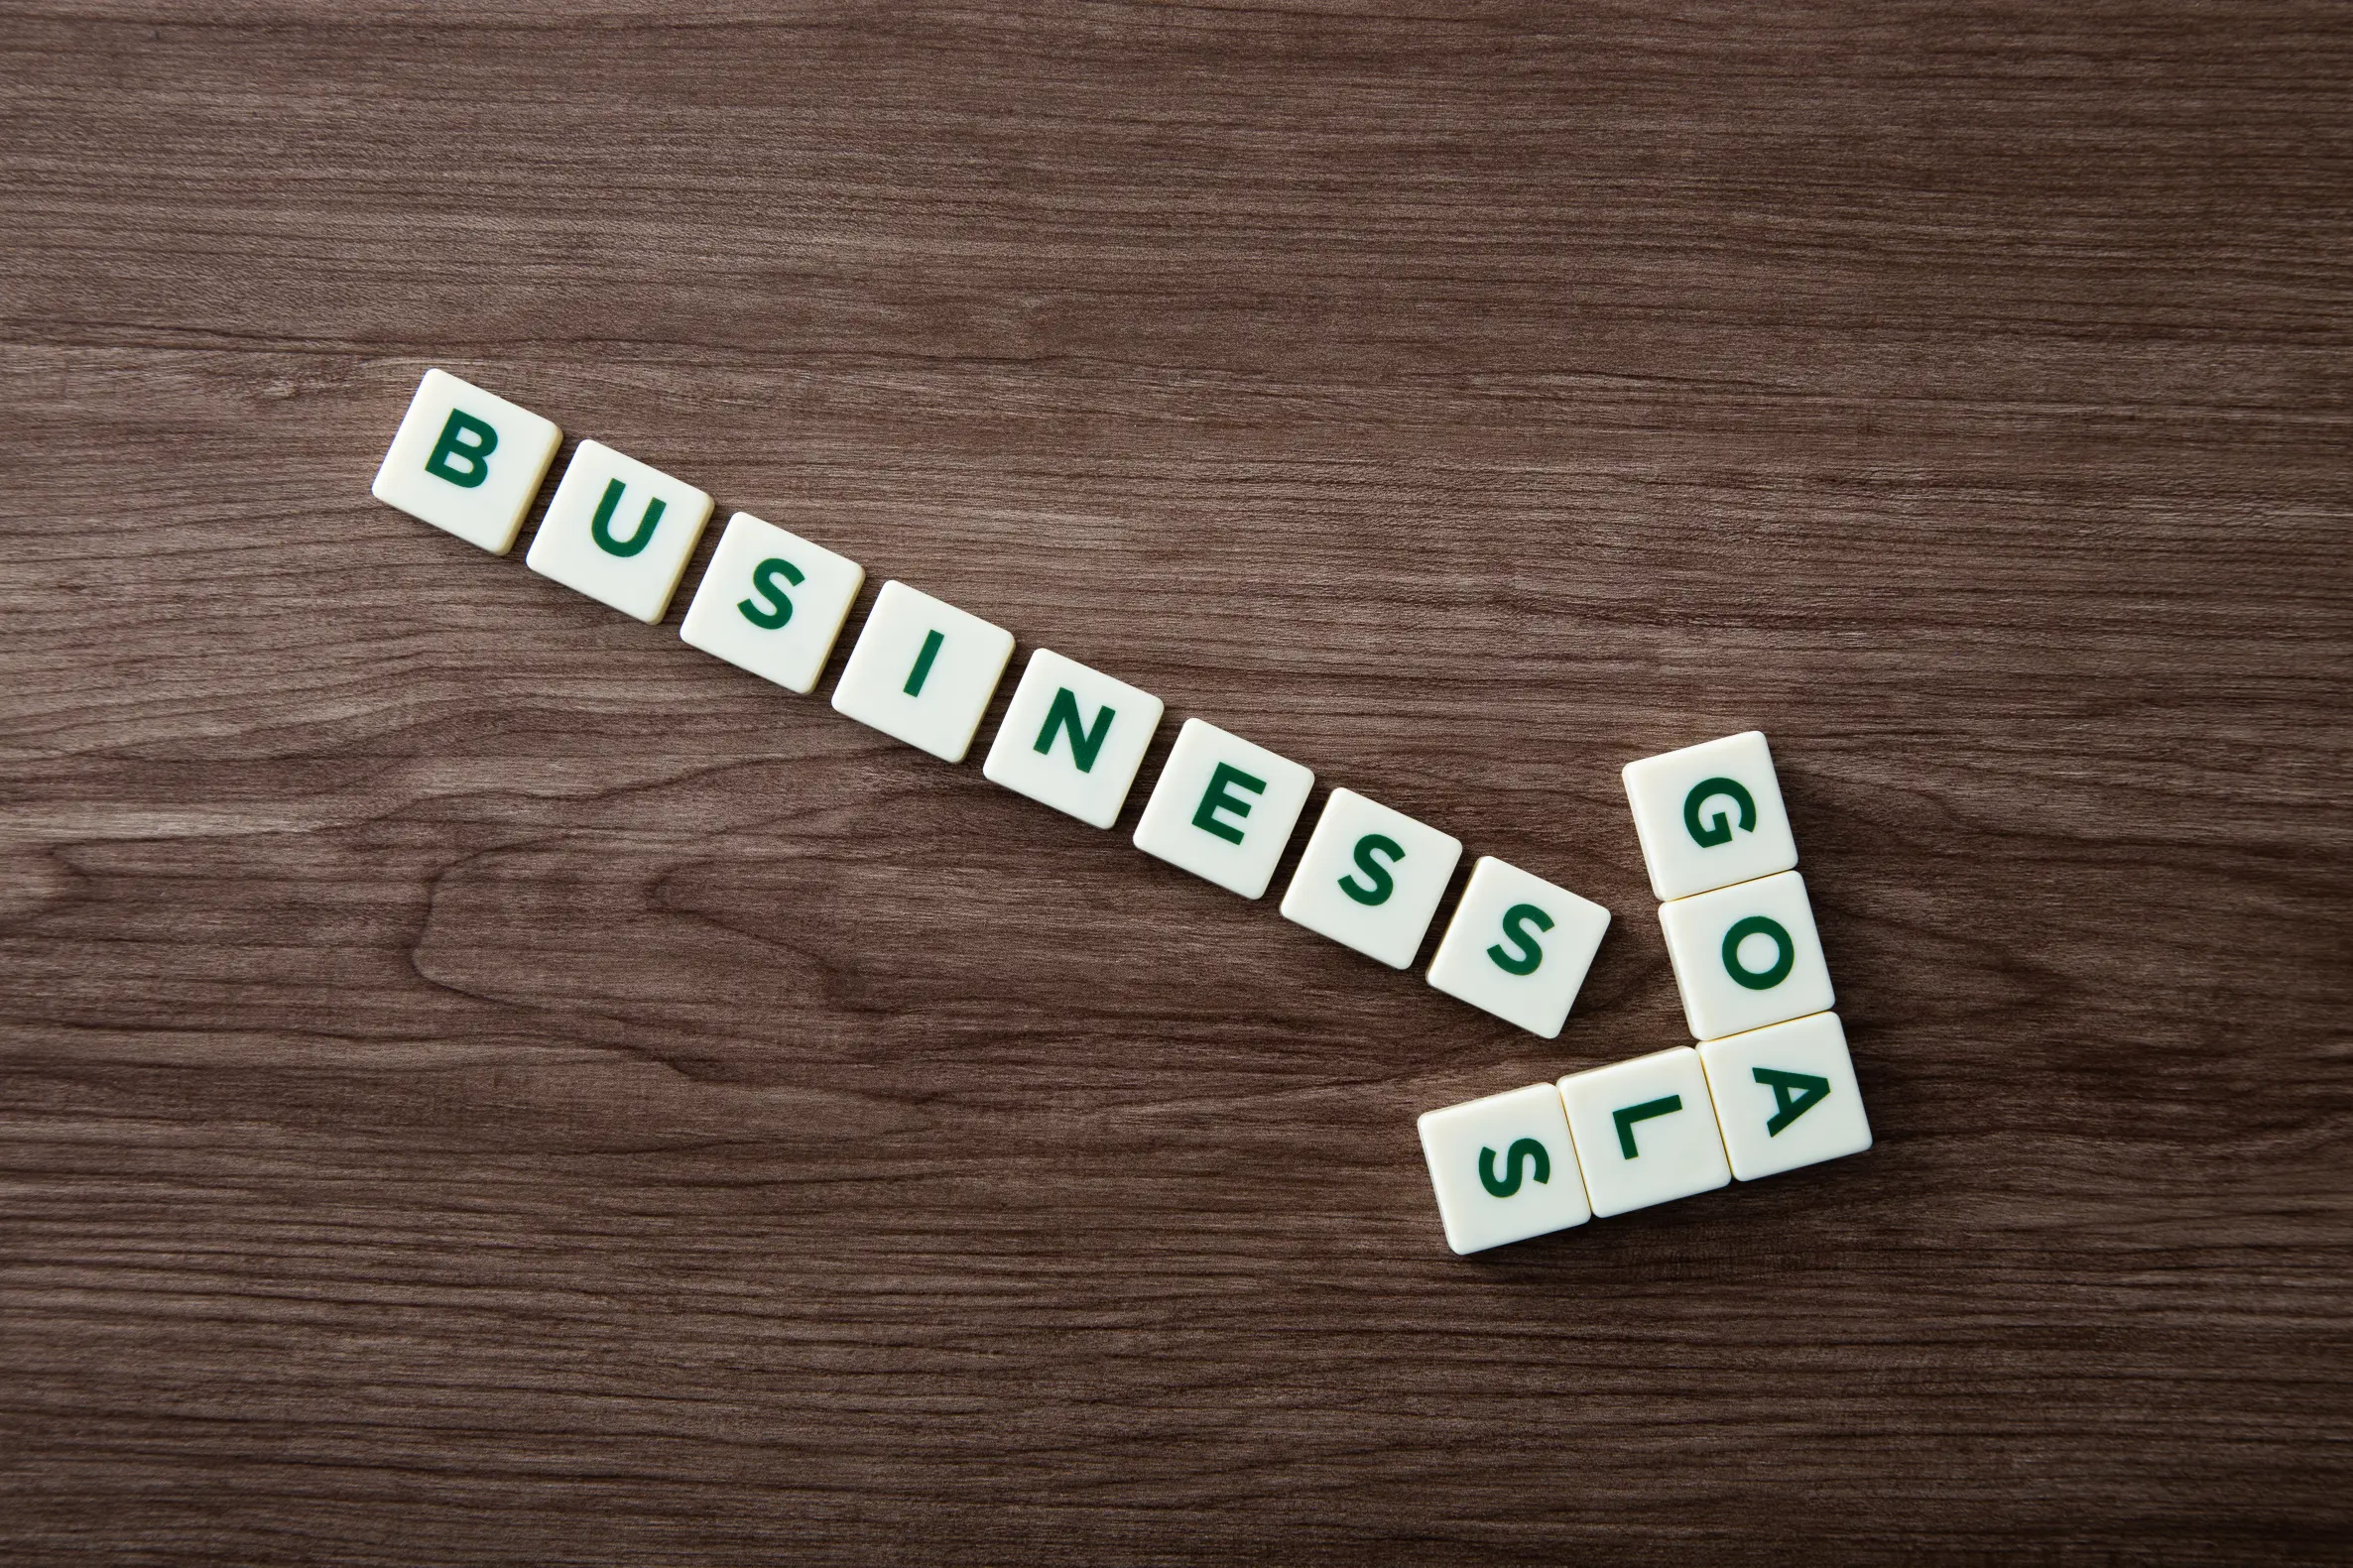 Scrabble-Buchstaben angeordnet als Pfeil mit dem Word "Business Goal"